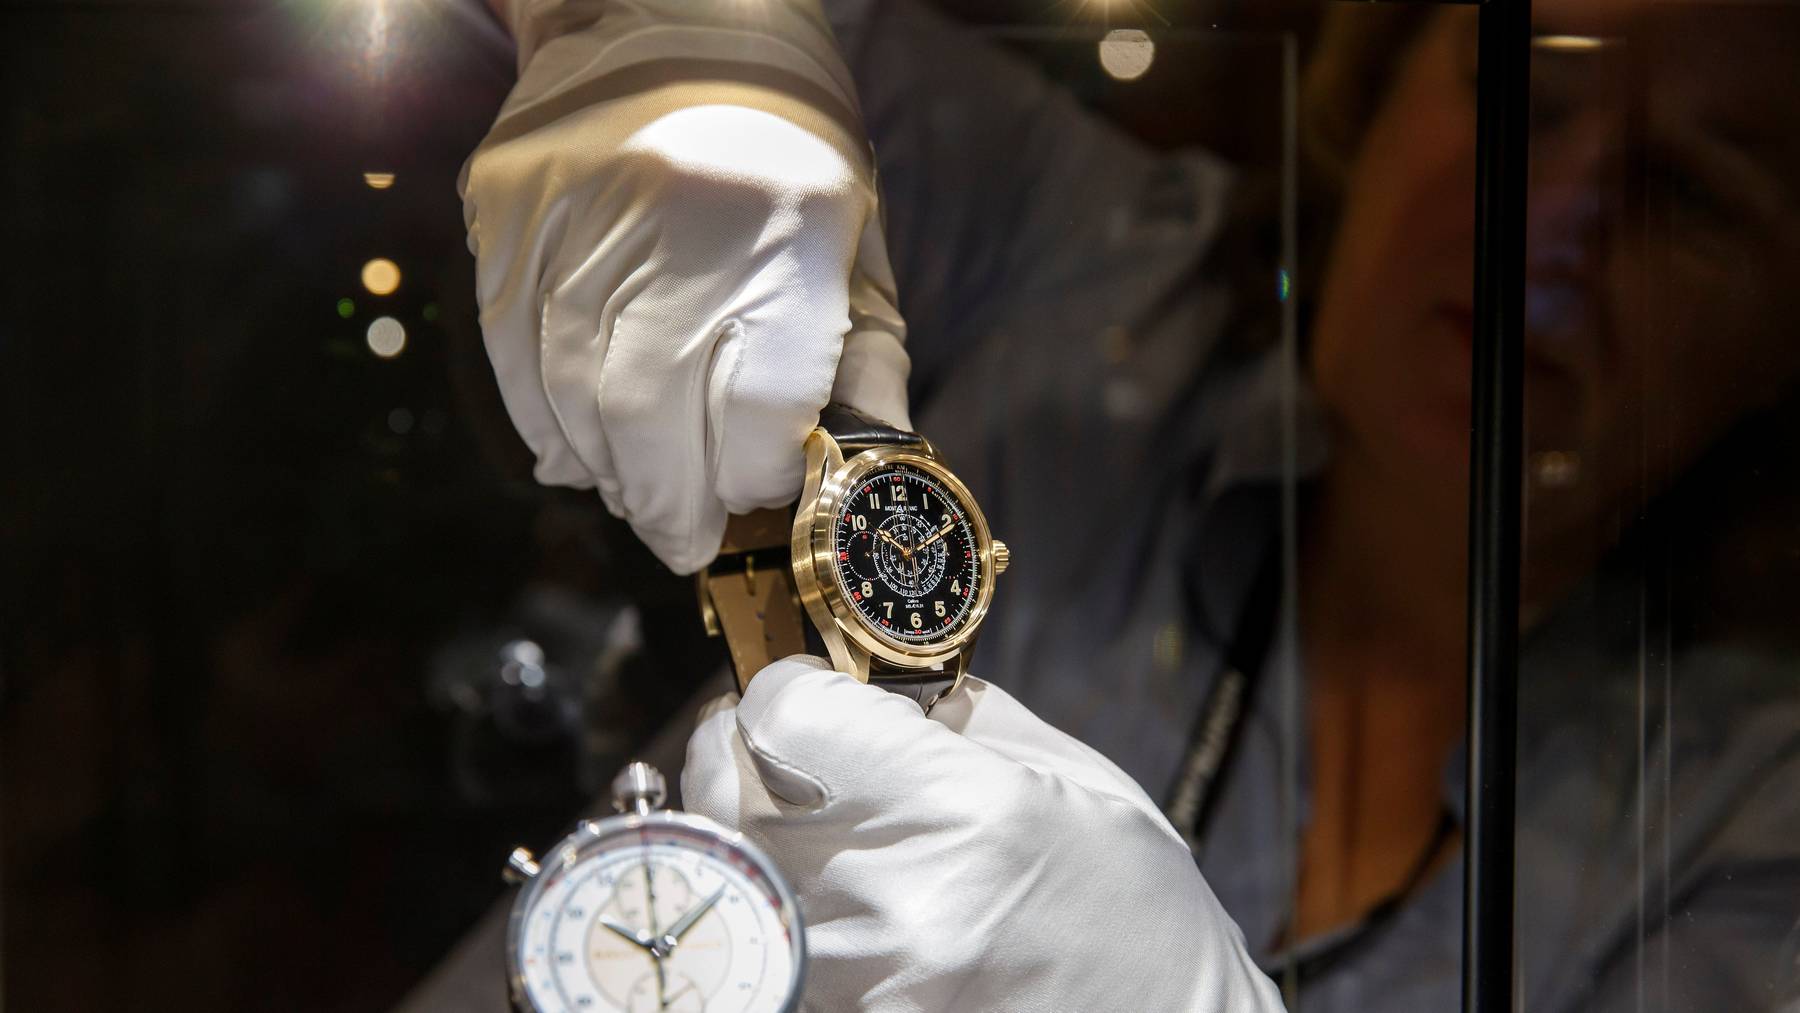 Zehn Schweizer Schmuck- und Uhrenhersteller sind in der Rangliste der Top 100 Luxusgüterunternehmen. (Symbolbild)